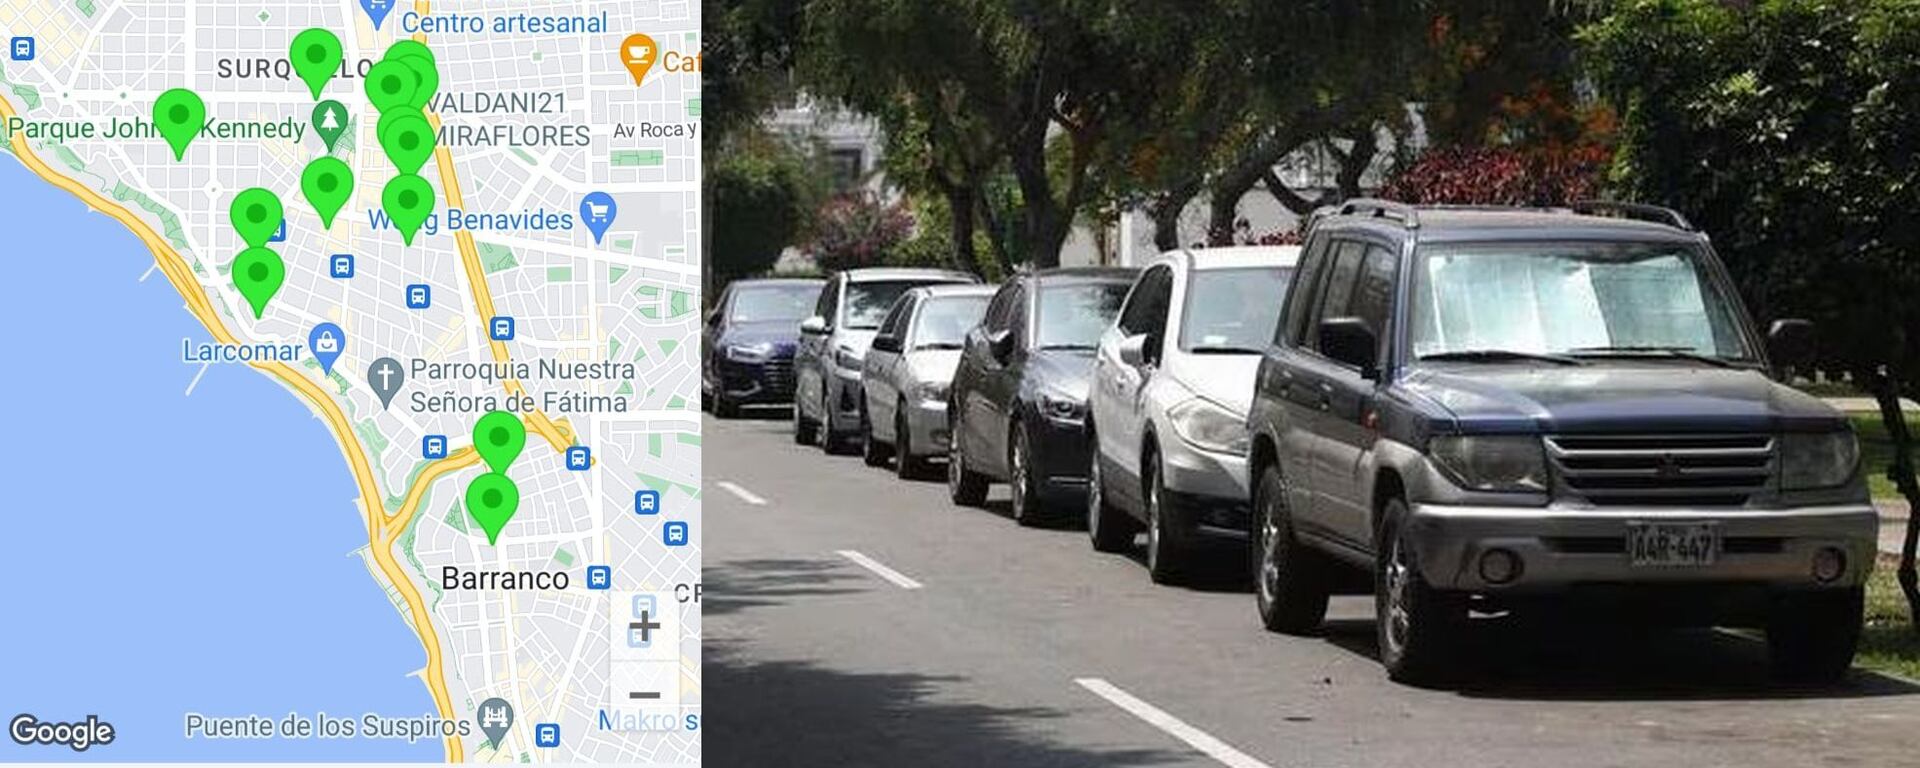 Apps que permiten hallar y reservar espacio libre para estacionar: Te enseñamos cómo funcionan